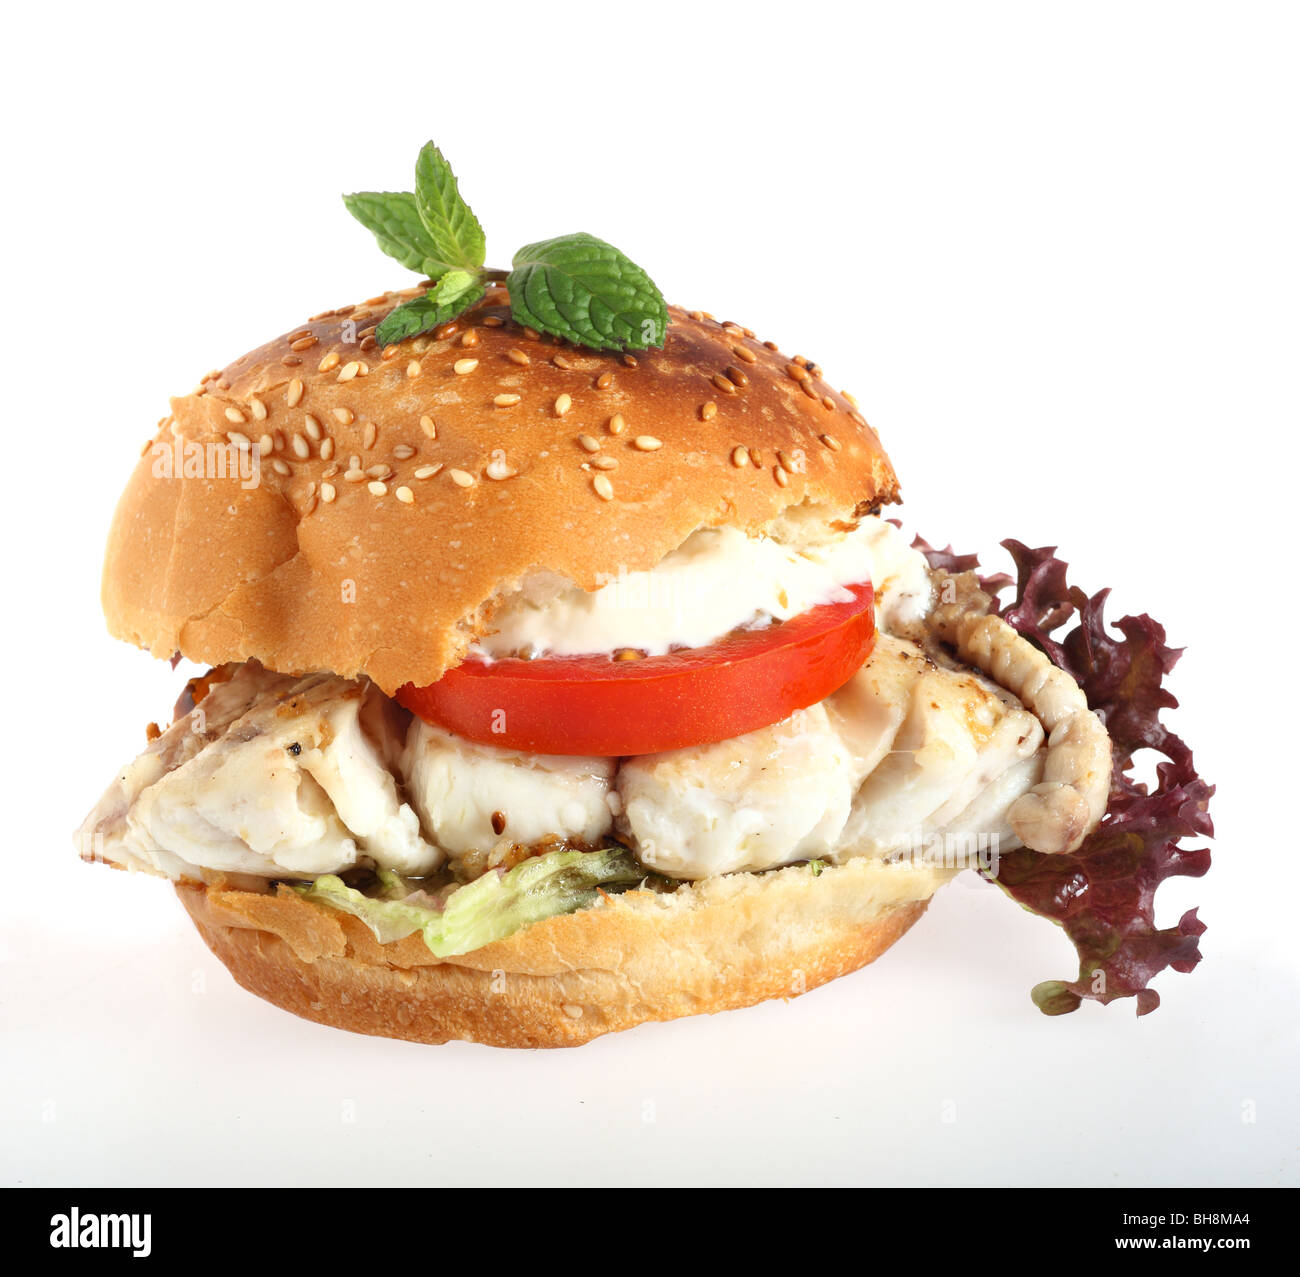 Un hamburger bun rempli d'un filet de poisson frit, salade et hamour Banque D'Images